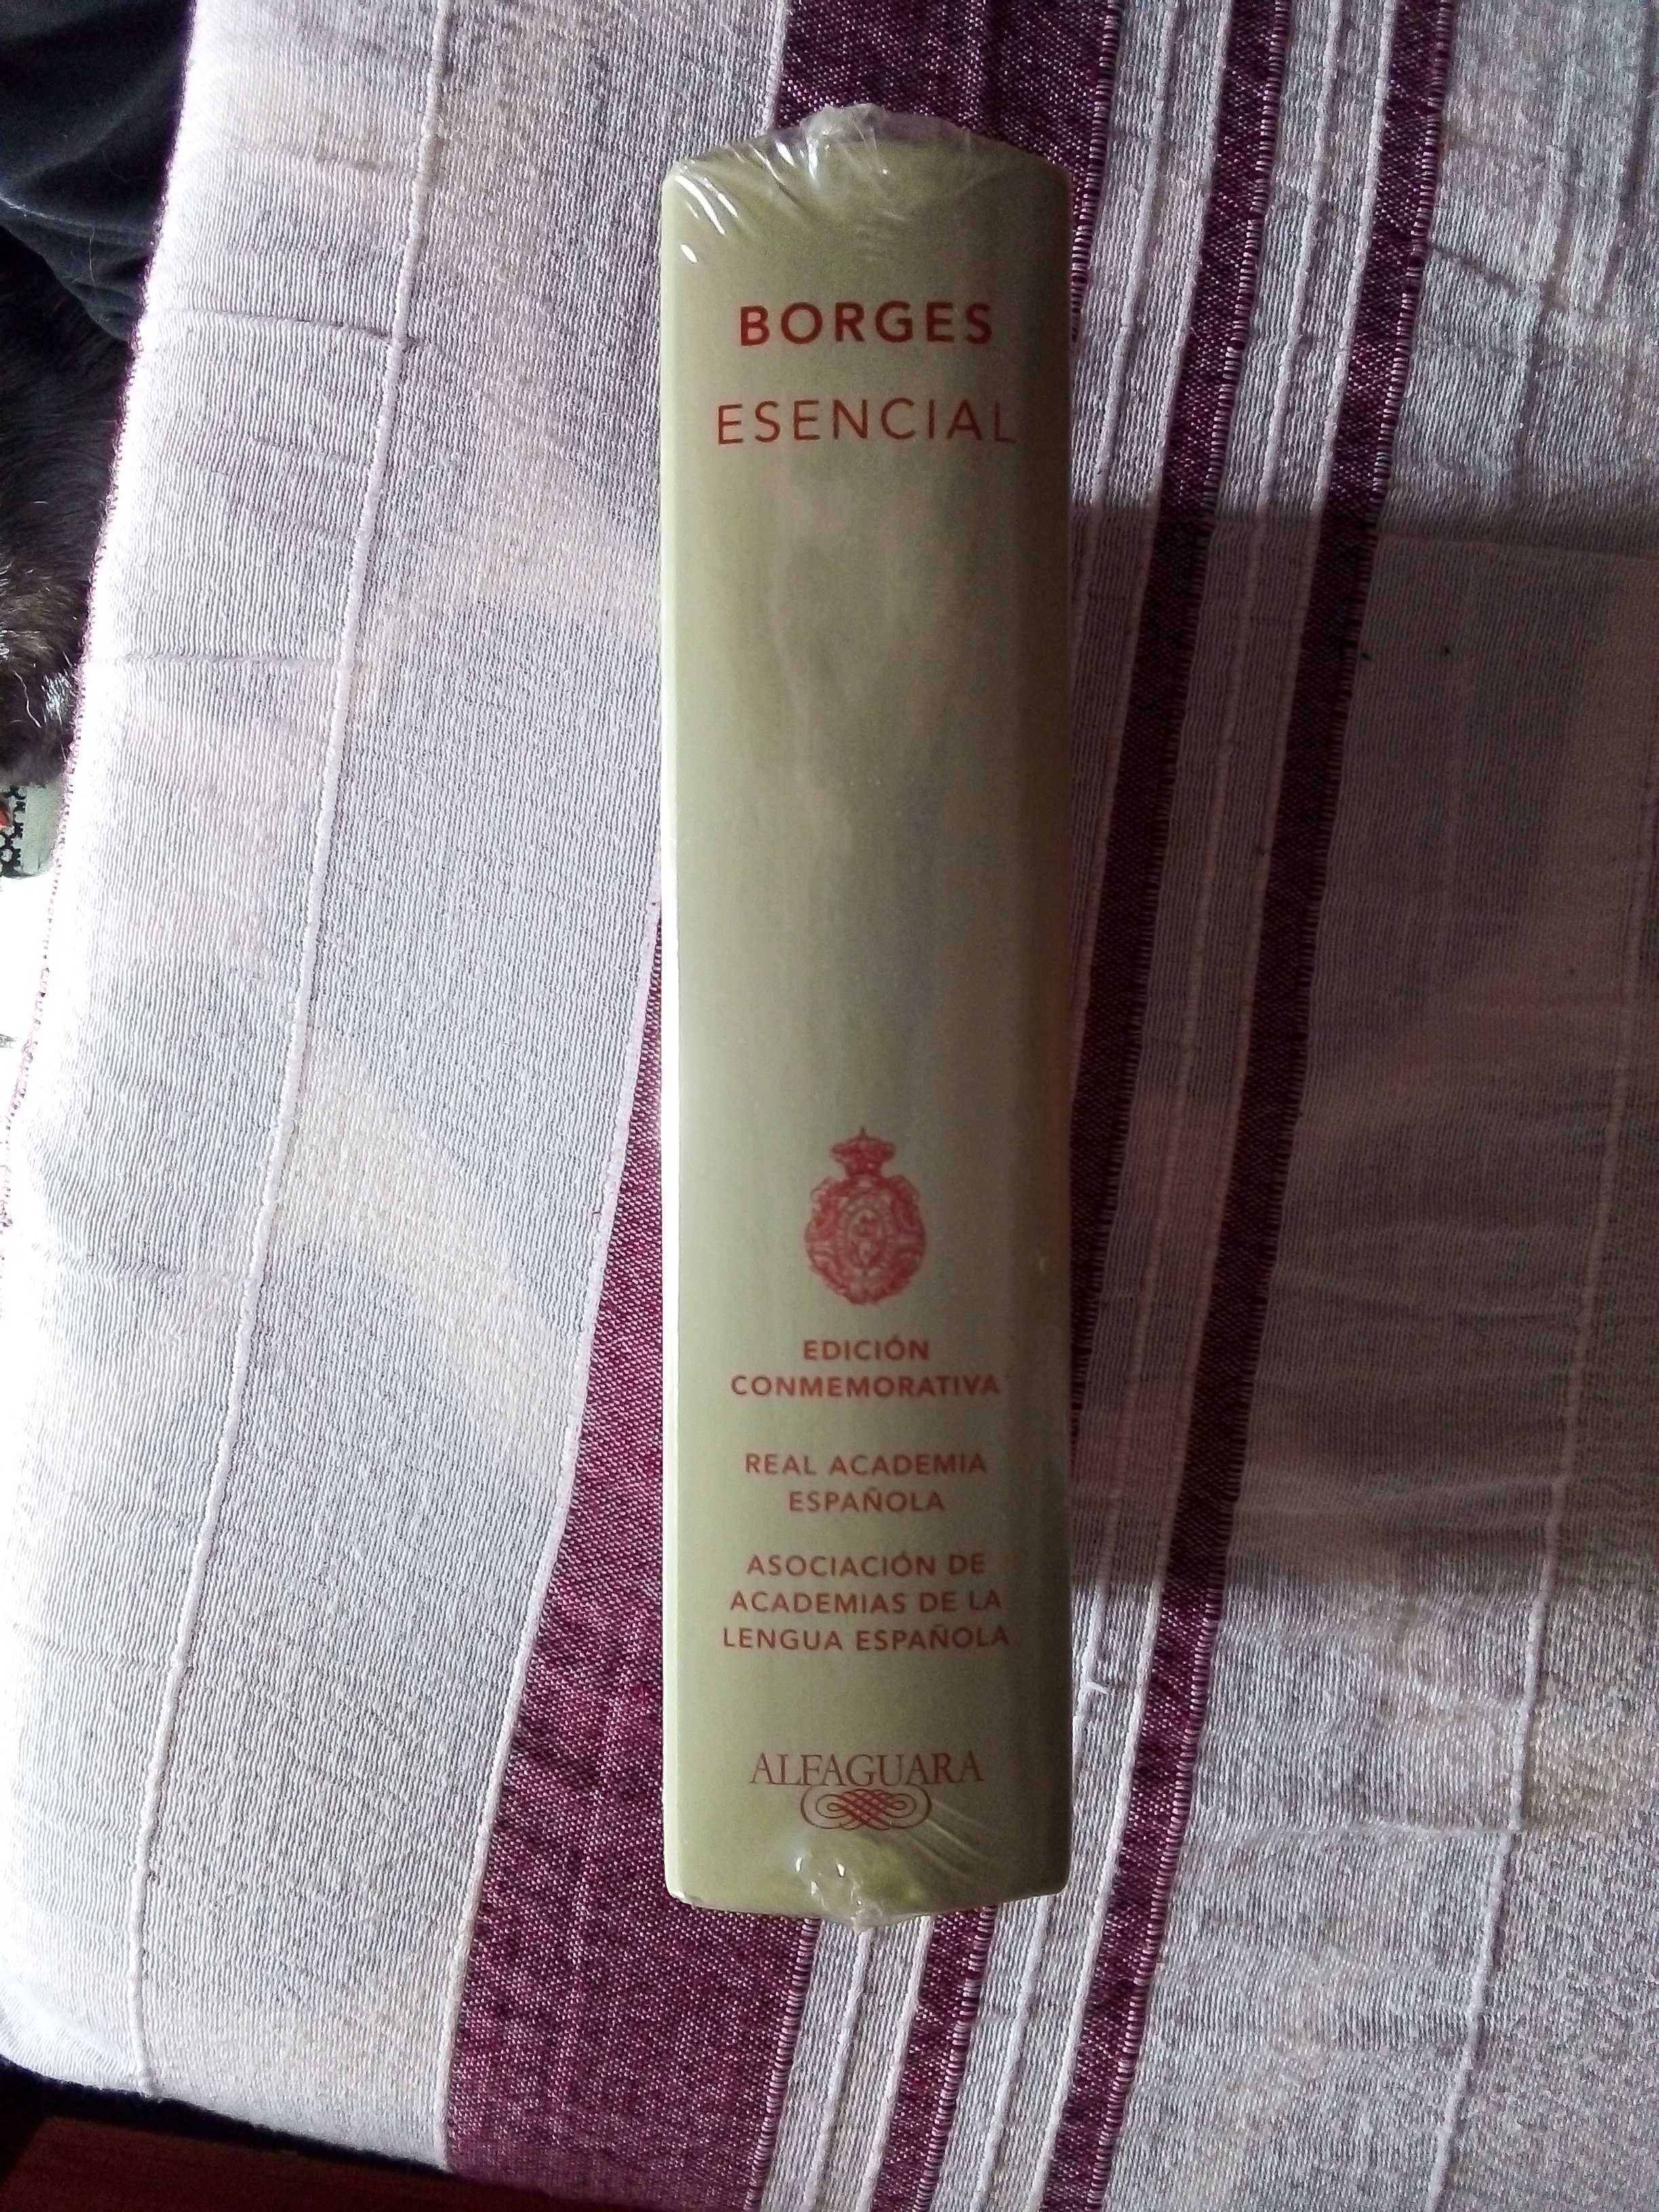 Jorge Luis Borges - Borges Esencial - Edicion Conmemorativa